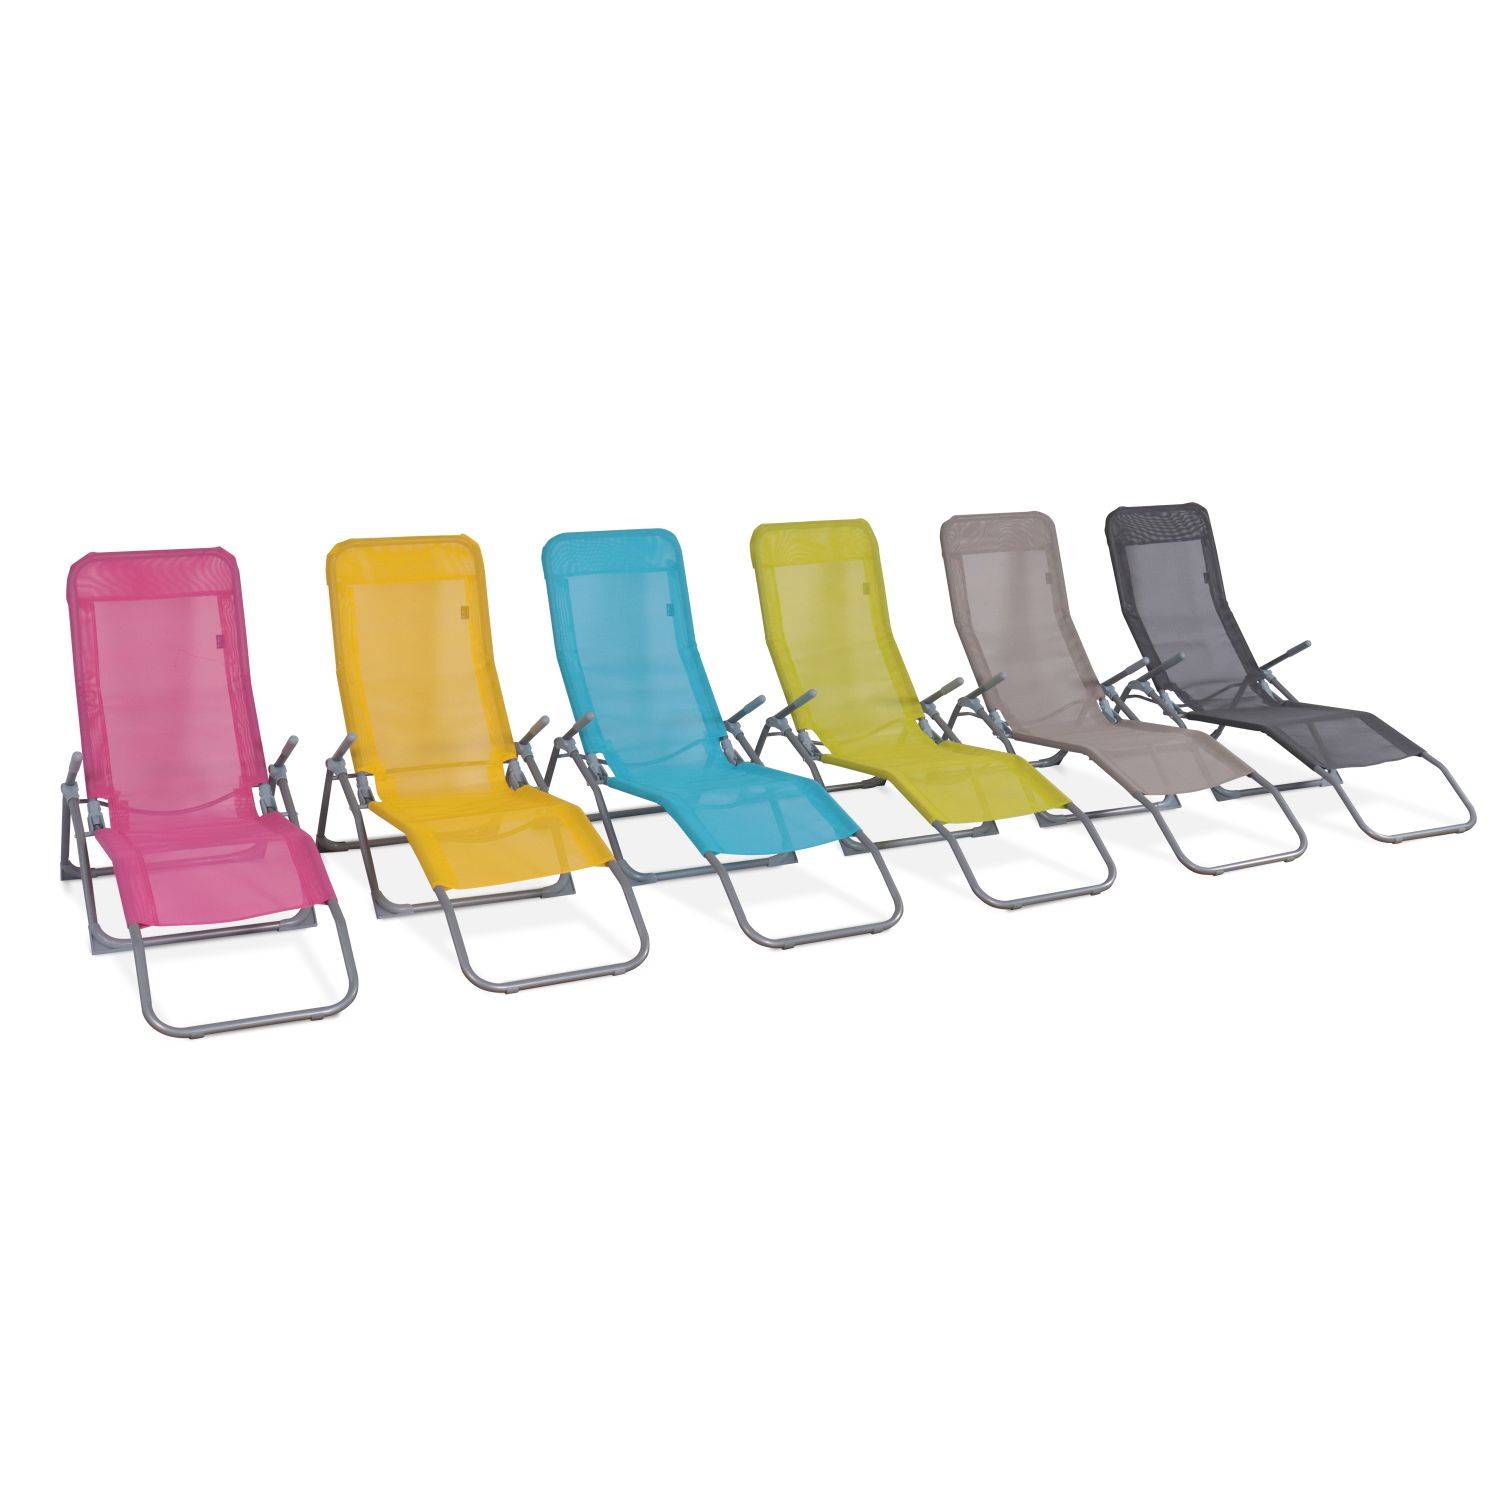 Set van 2 opvouwbare ligstoelen - Levito Turkoois- Ligstoelen van textileen, 2 posities, opvouwbare ligstoelen Photo6